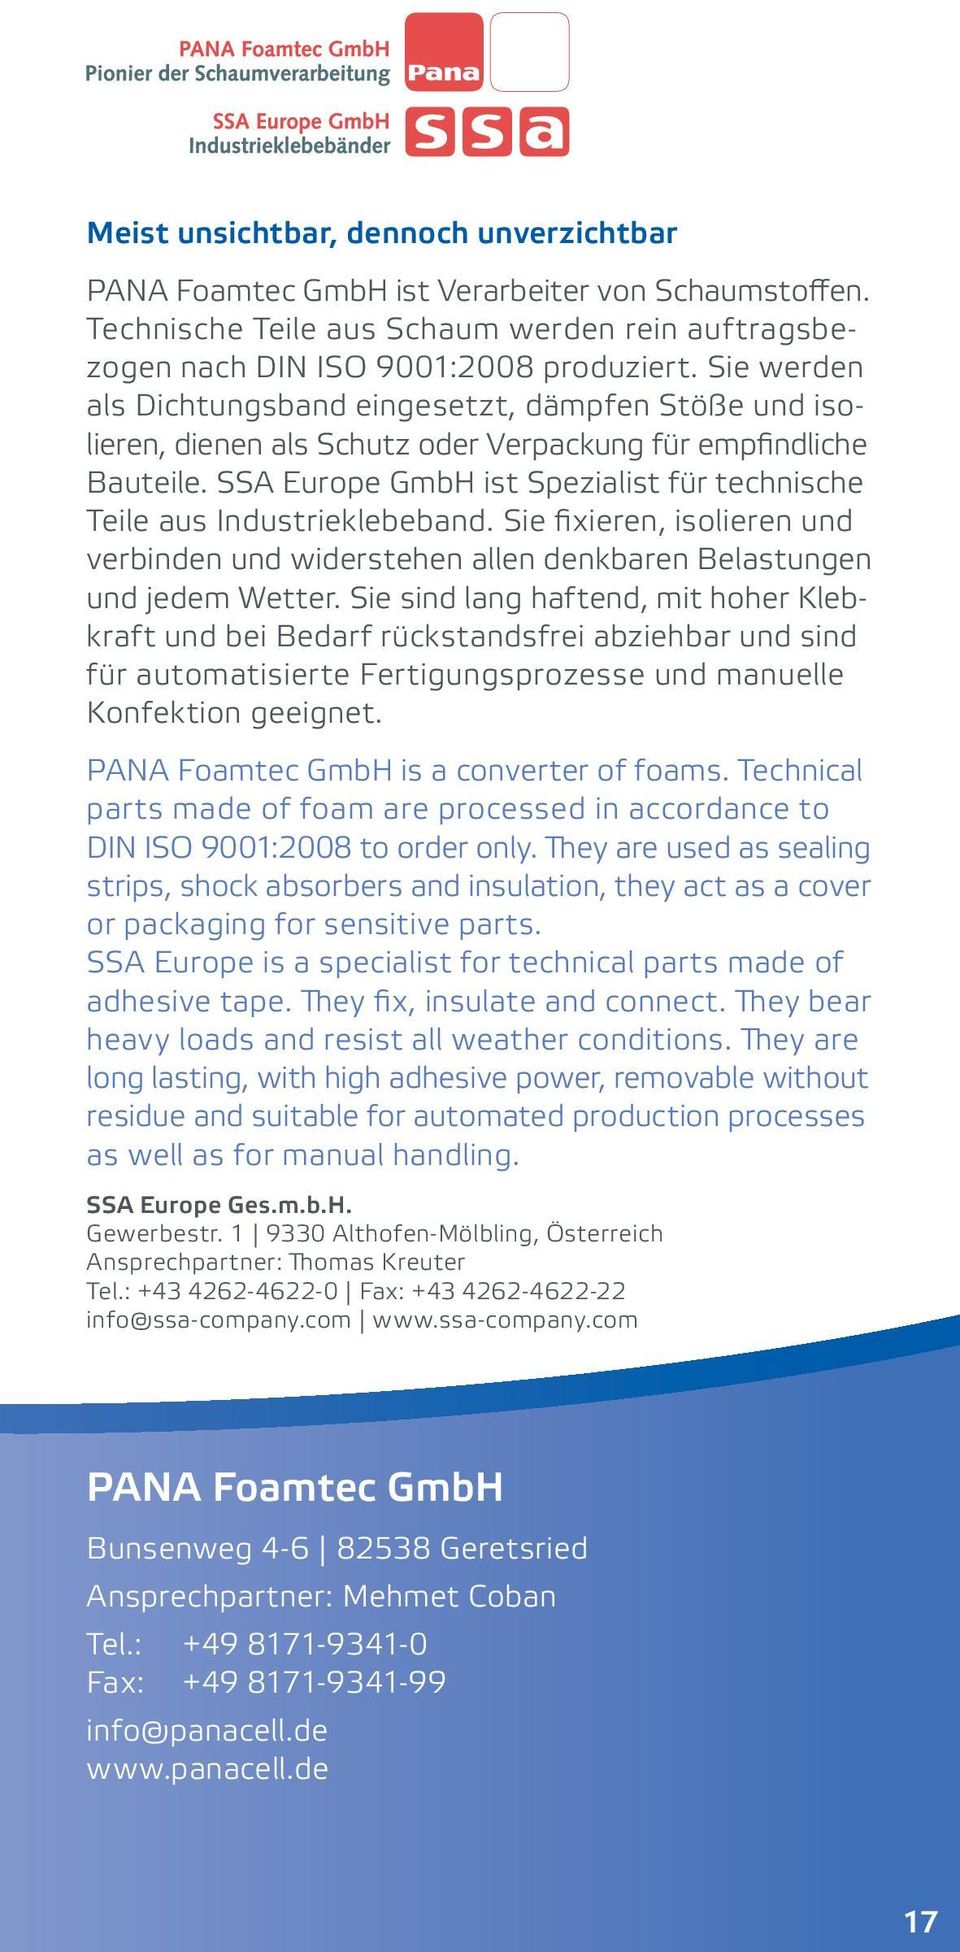 SSA Europe GmbH ist Spezialist für technische Teile aus Industrieklebeband. Sie fixieren, isolieren und verbinden und widerstehen allen denkbaren Belastungen und jedem Wetter.